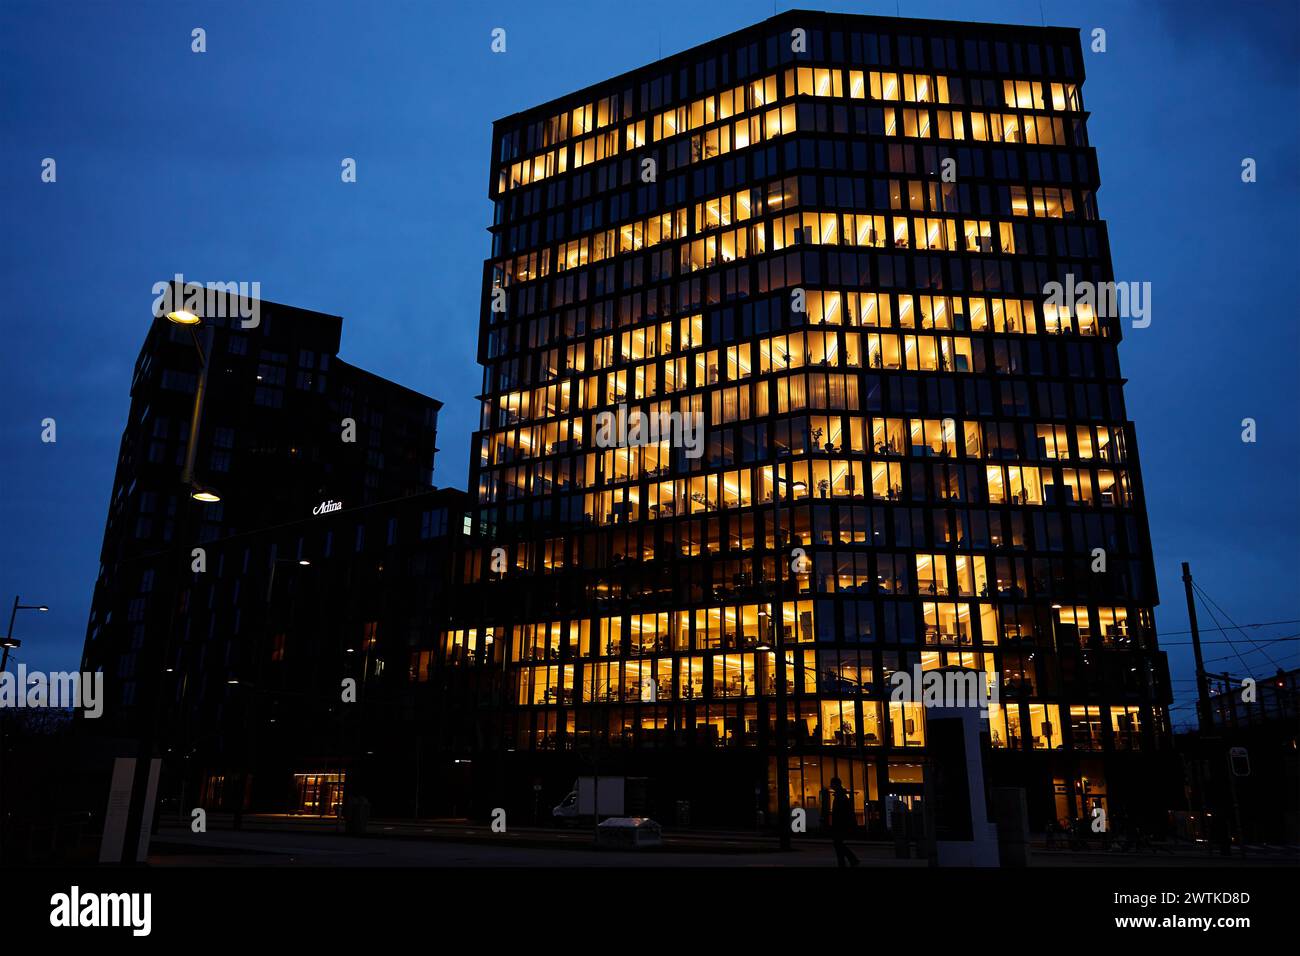 L'immeuble de bureaux illumine la soirée avec des fenêtres qui brillent au crépuscule, mettant en valeur la vie de travail urbaine après les heures de travail Banque D'Images